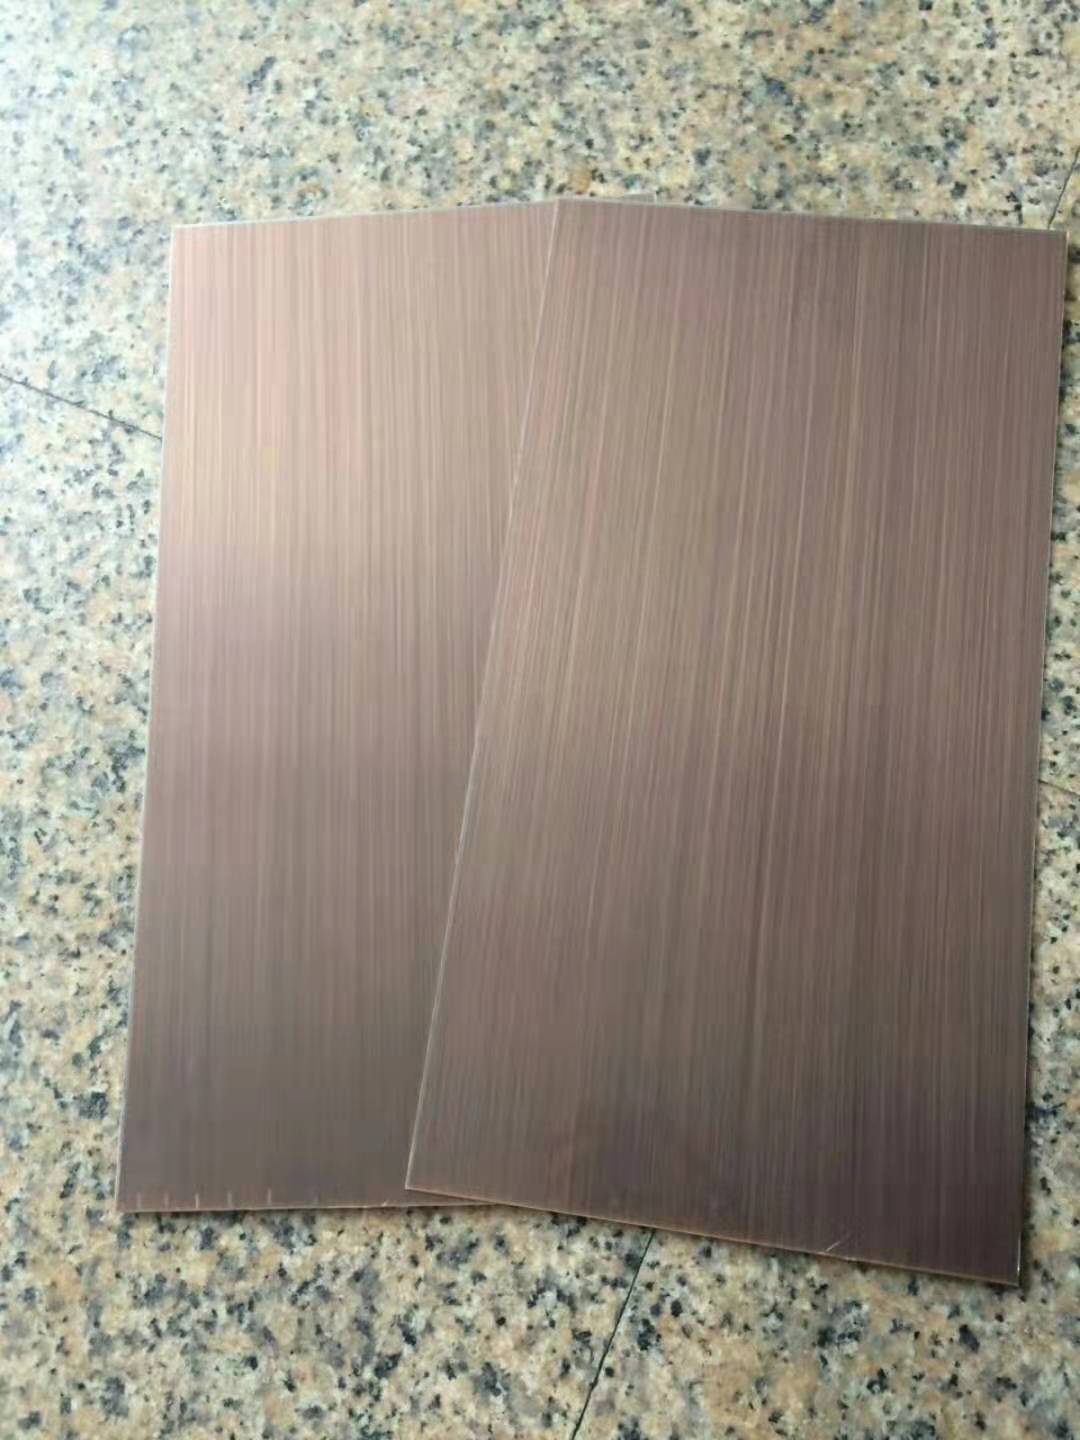 201拉丝红古铜不锈钢板  镀铜手工拉丝不锈钢板 哑光红古铜板生产厂家